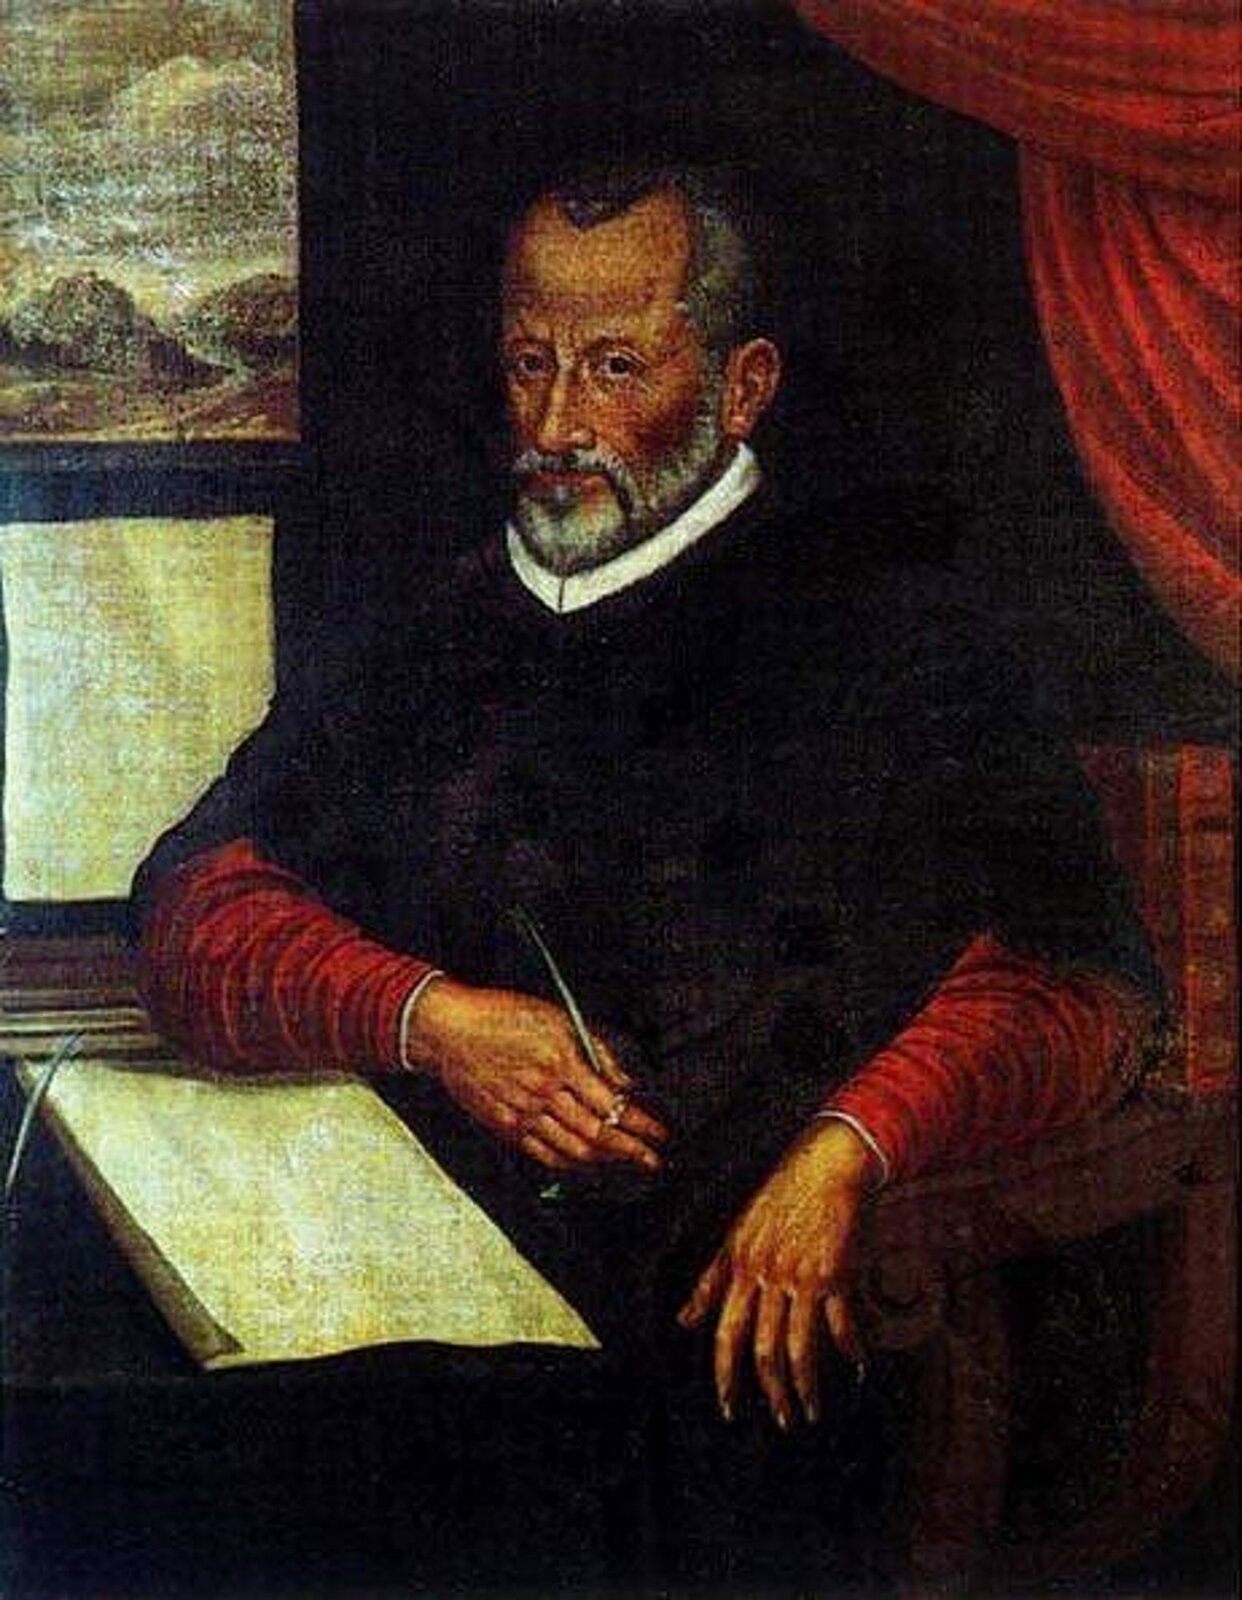 Fotografia przedstawia włoskiego kompozytora epoki renesansu - Giovanni Pierluigi da Palestrina. Mężczyzna siedzi na zdobionym krześle, w dłoni ma długopis, a na kolanach biała kartka. Mężczyzna ubrany jest w czarną szatę, pod spodem na czerwoną koszulkę. Twarz mężczyzny jest przyjazna z zarostem na brodzie i wąsach.